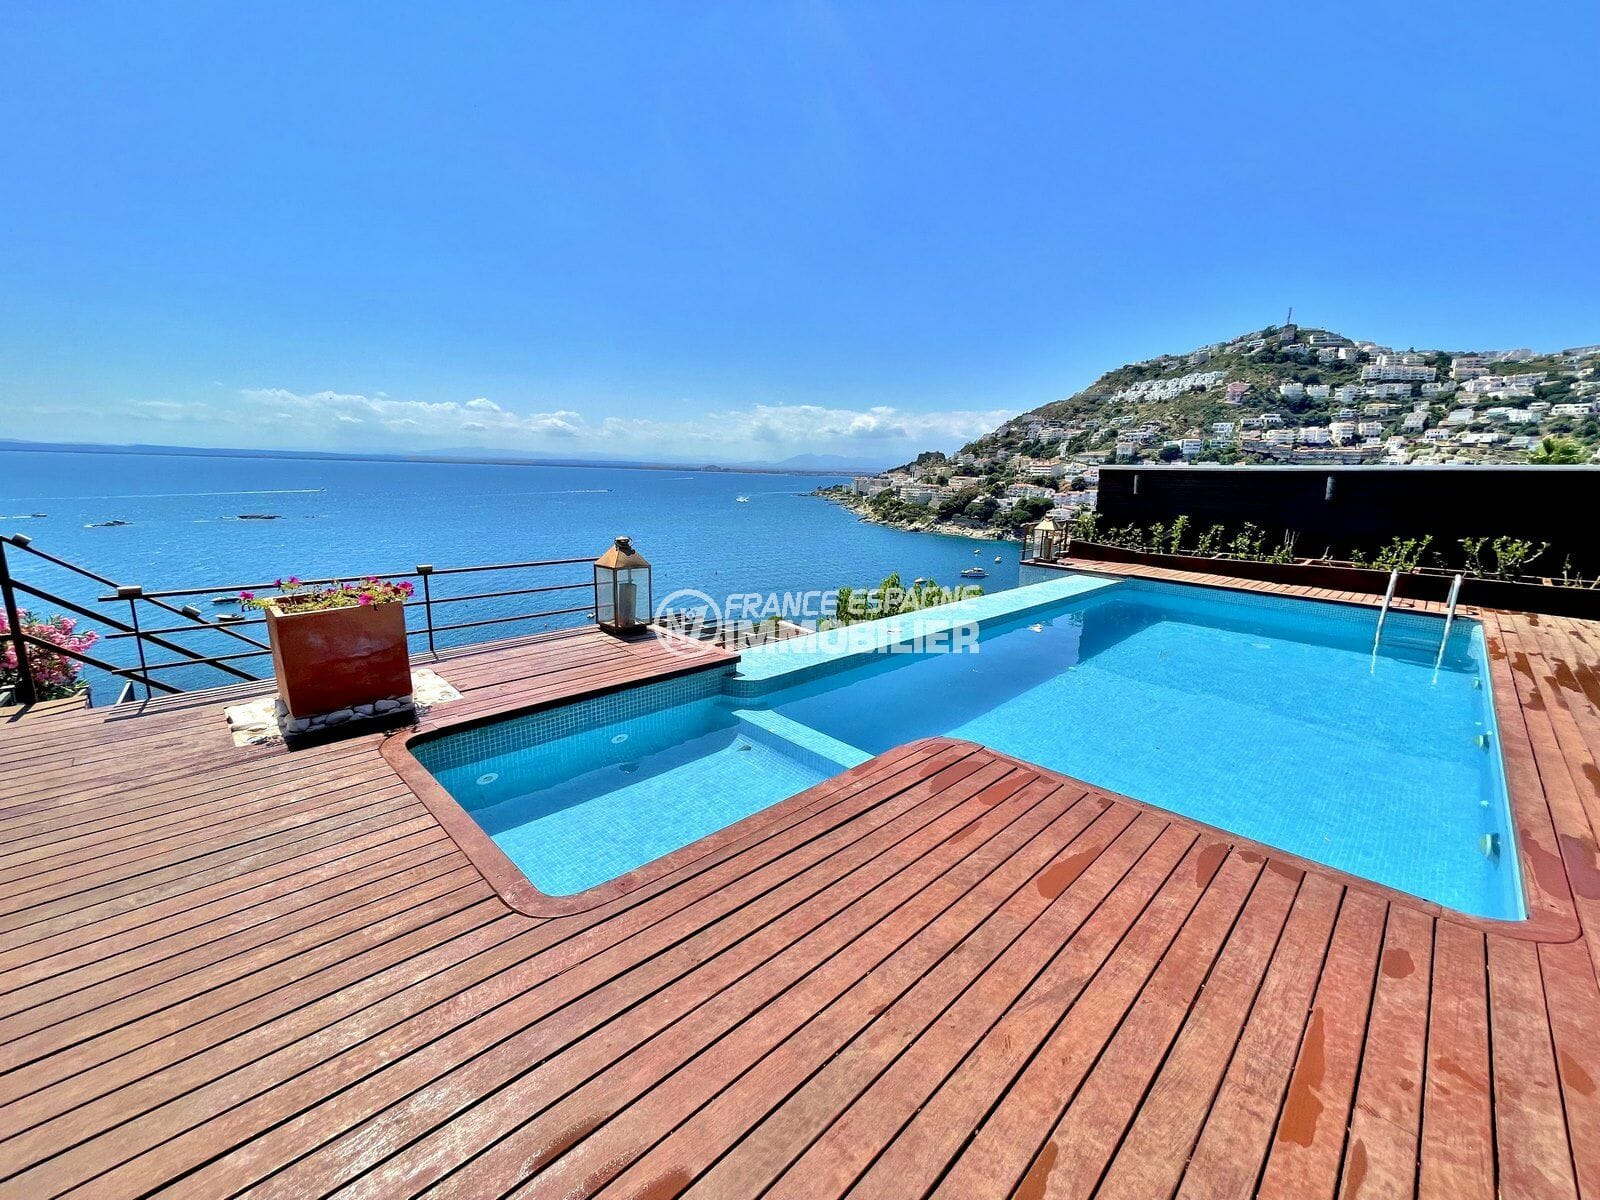 immo roses: villa 227 m² avec piscine privée, vue mer, 2 terrasses, garage et parking cour intérieur, proche plage